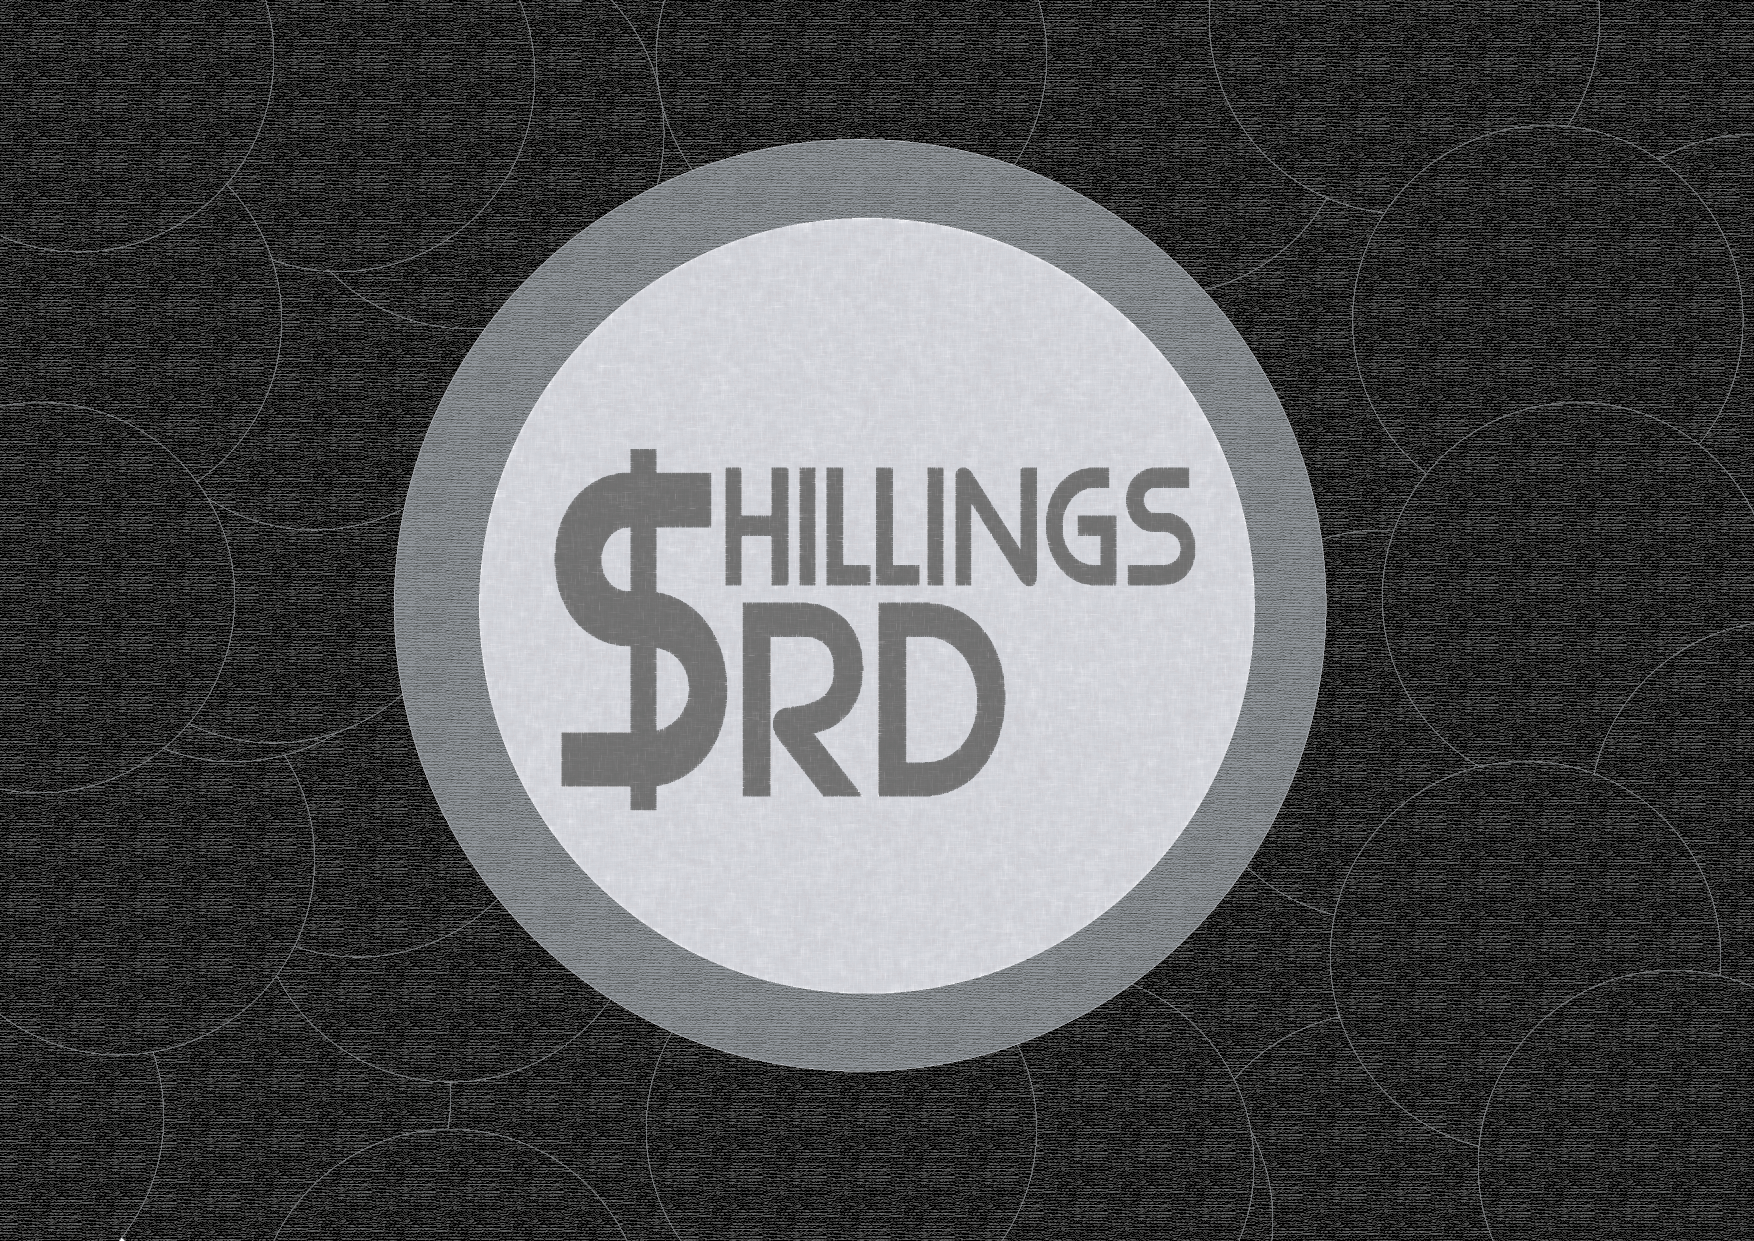 Shillings SRD